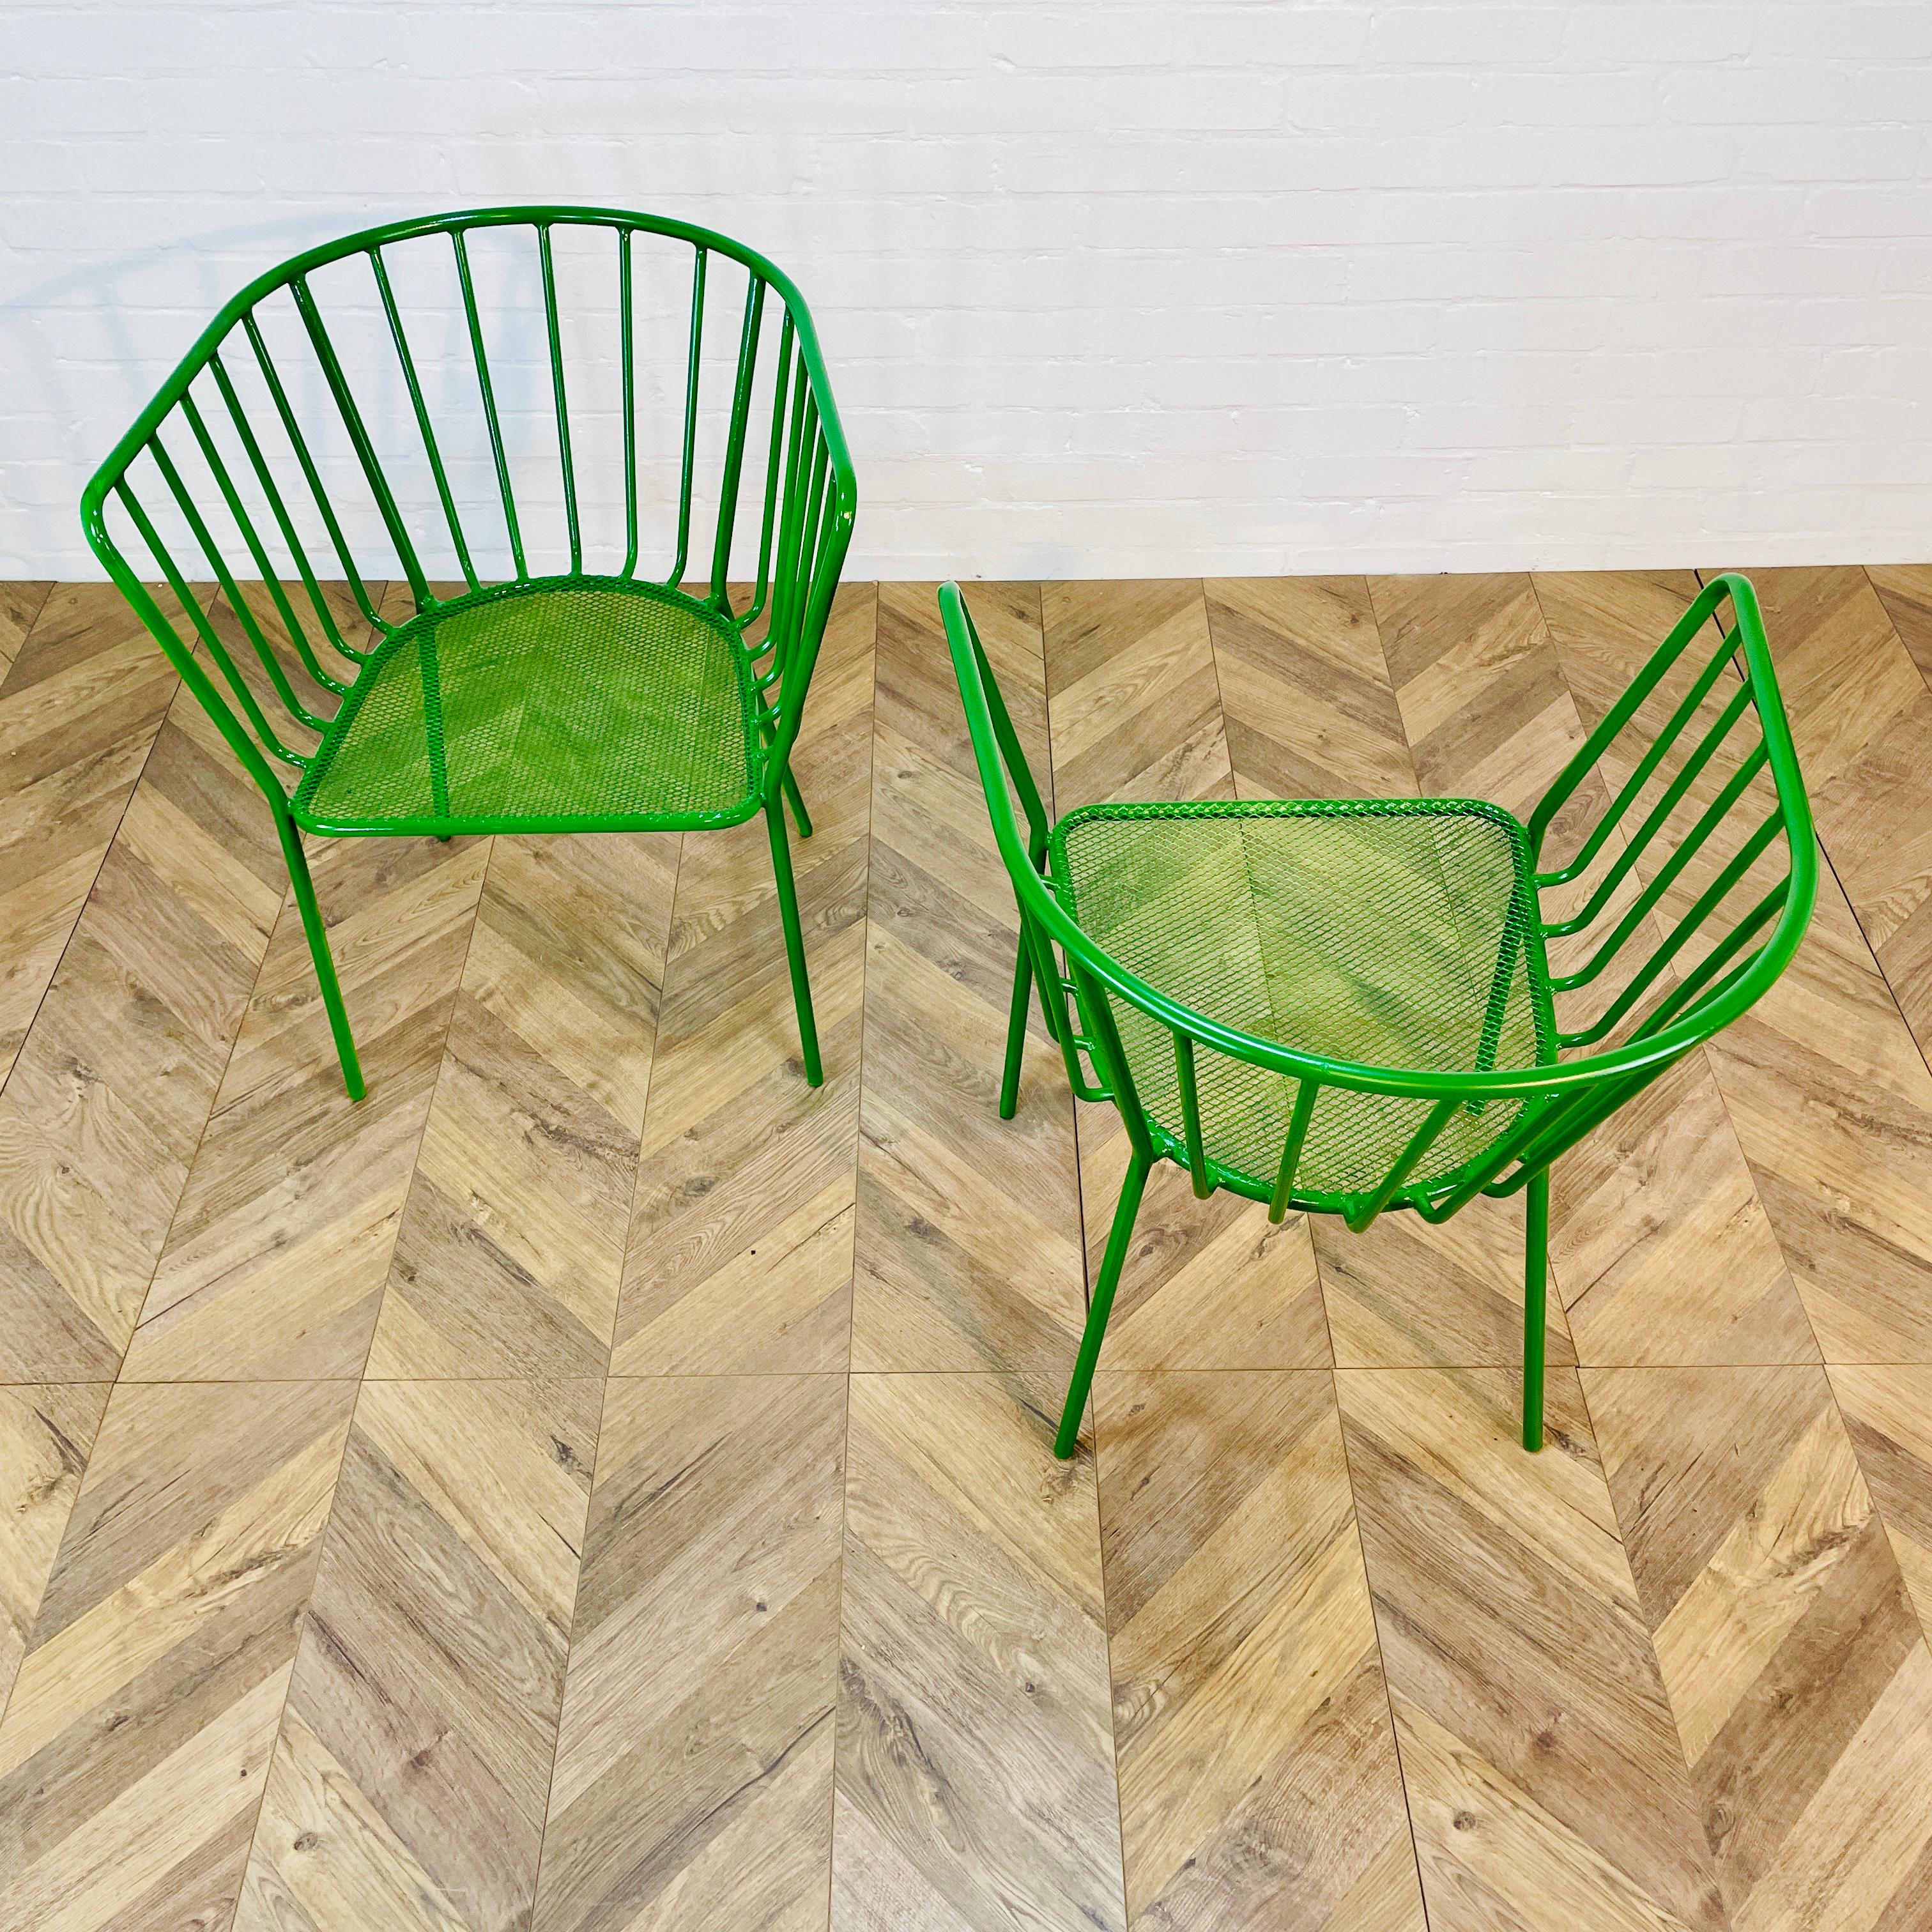 Ensemble de deux chaises en métal bien proportionnées, fabriquées en Italie, vers les années 1970.

Les cadres sont solides et les sièges sont profonds, mais en accord avec leur âge et leur utilisation, ils montrent de petits signes d'usure (comme